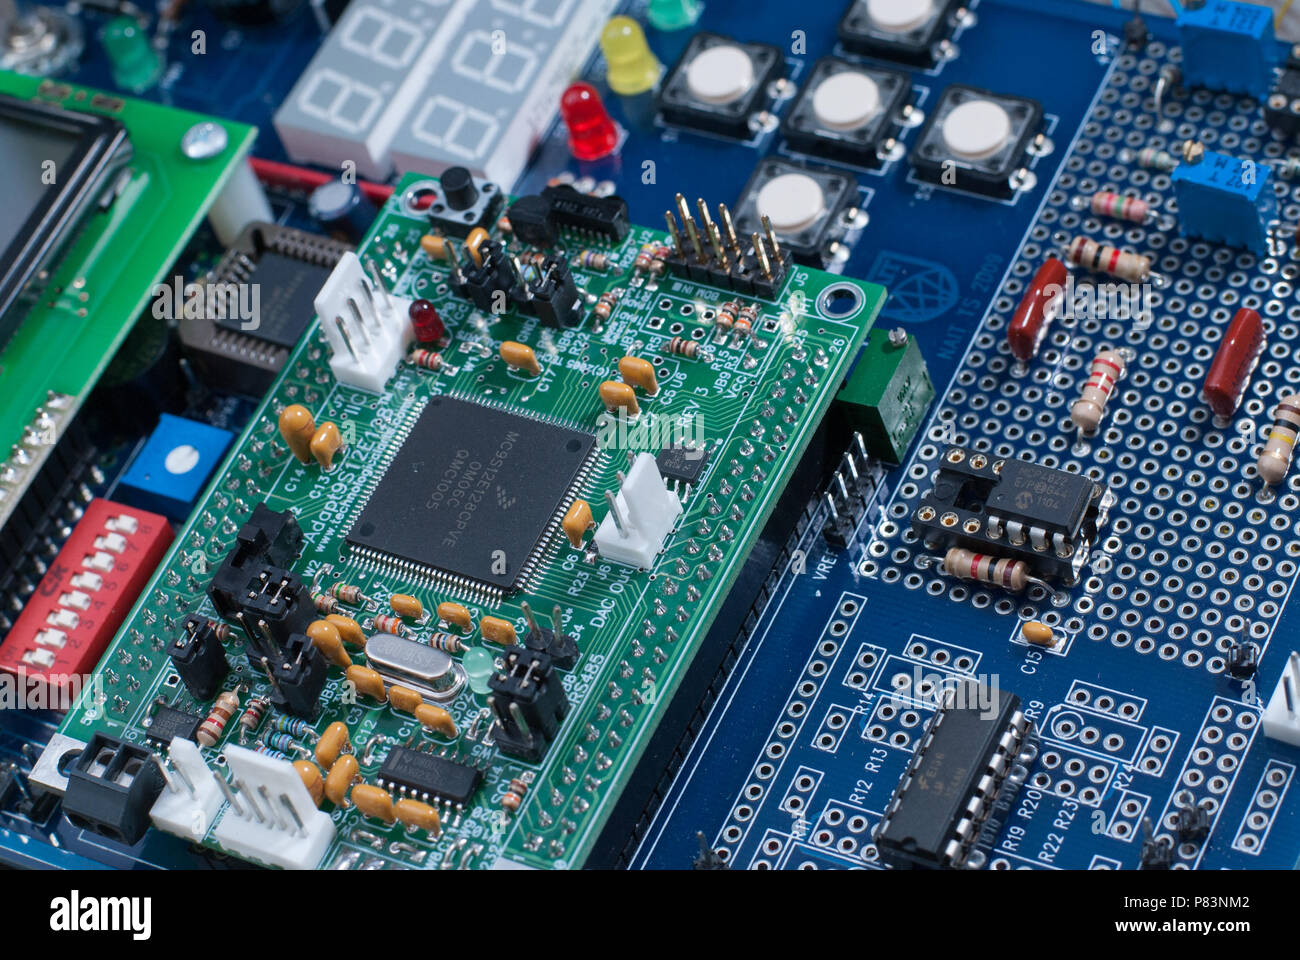 In der Nähe des elektronischen Teile in einem Mikrocontroller einschließlich Dioden, Transistoren, Widerstände, Kondensatoren, und Prozessoren. Stockfoto